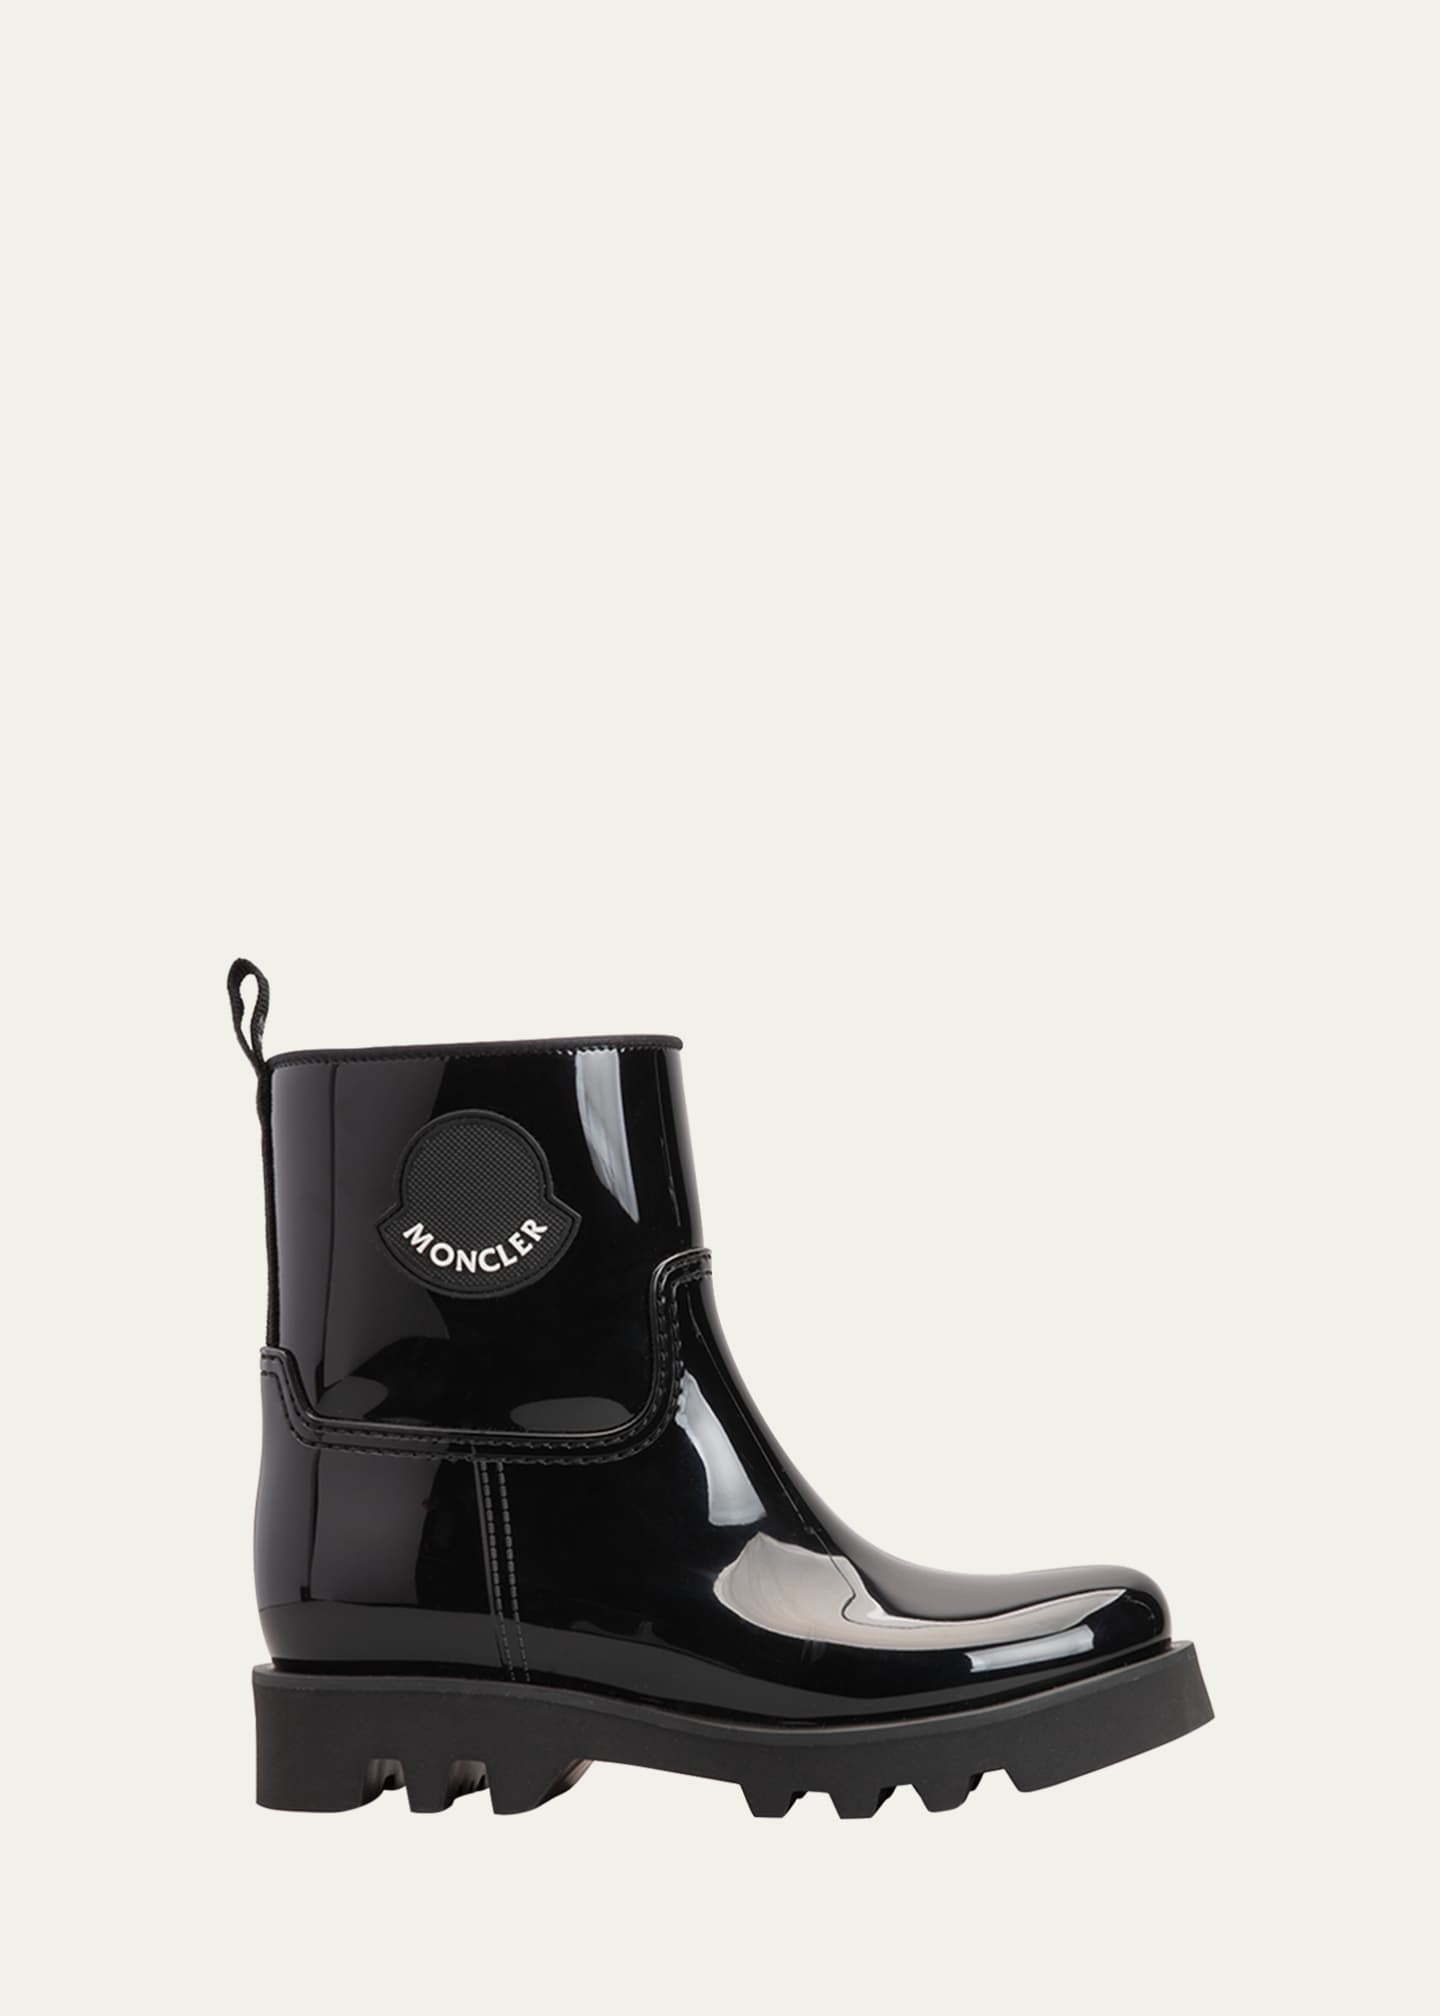 Moncler Ginette Waterproof Rubber Rain Boots - Bergdorf Goodman